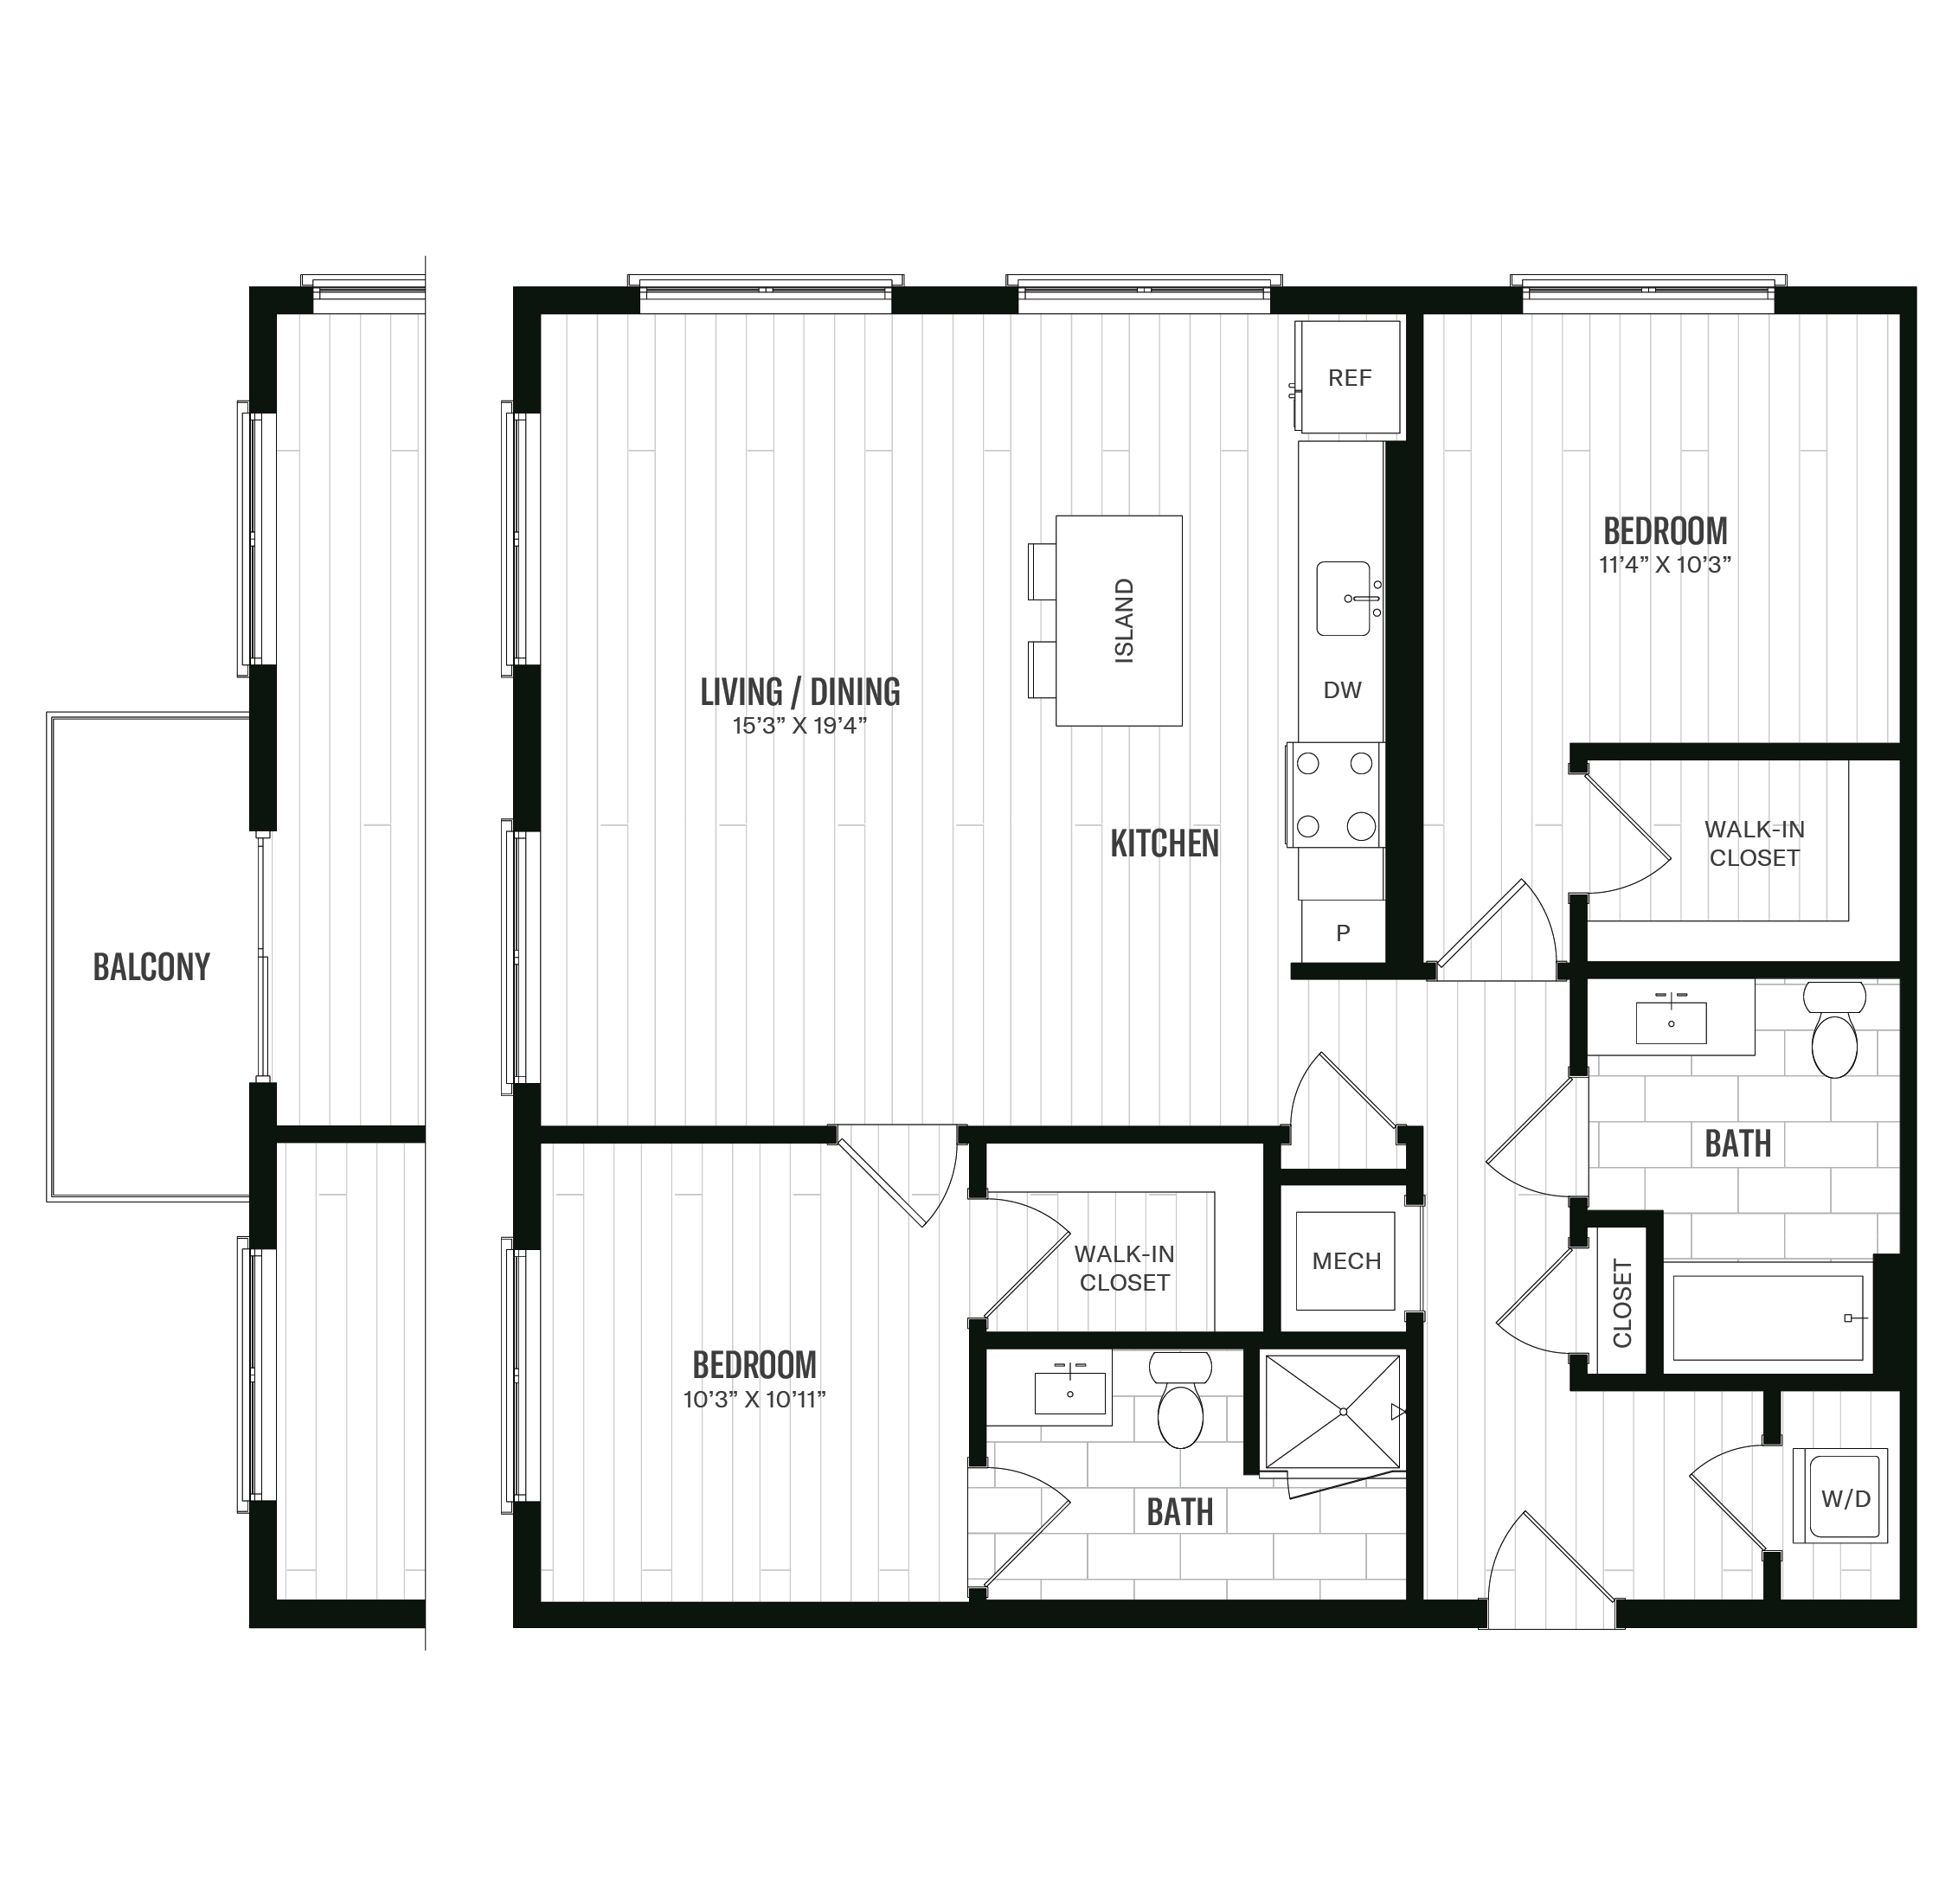 Floorplan image of unit 463